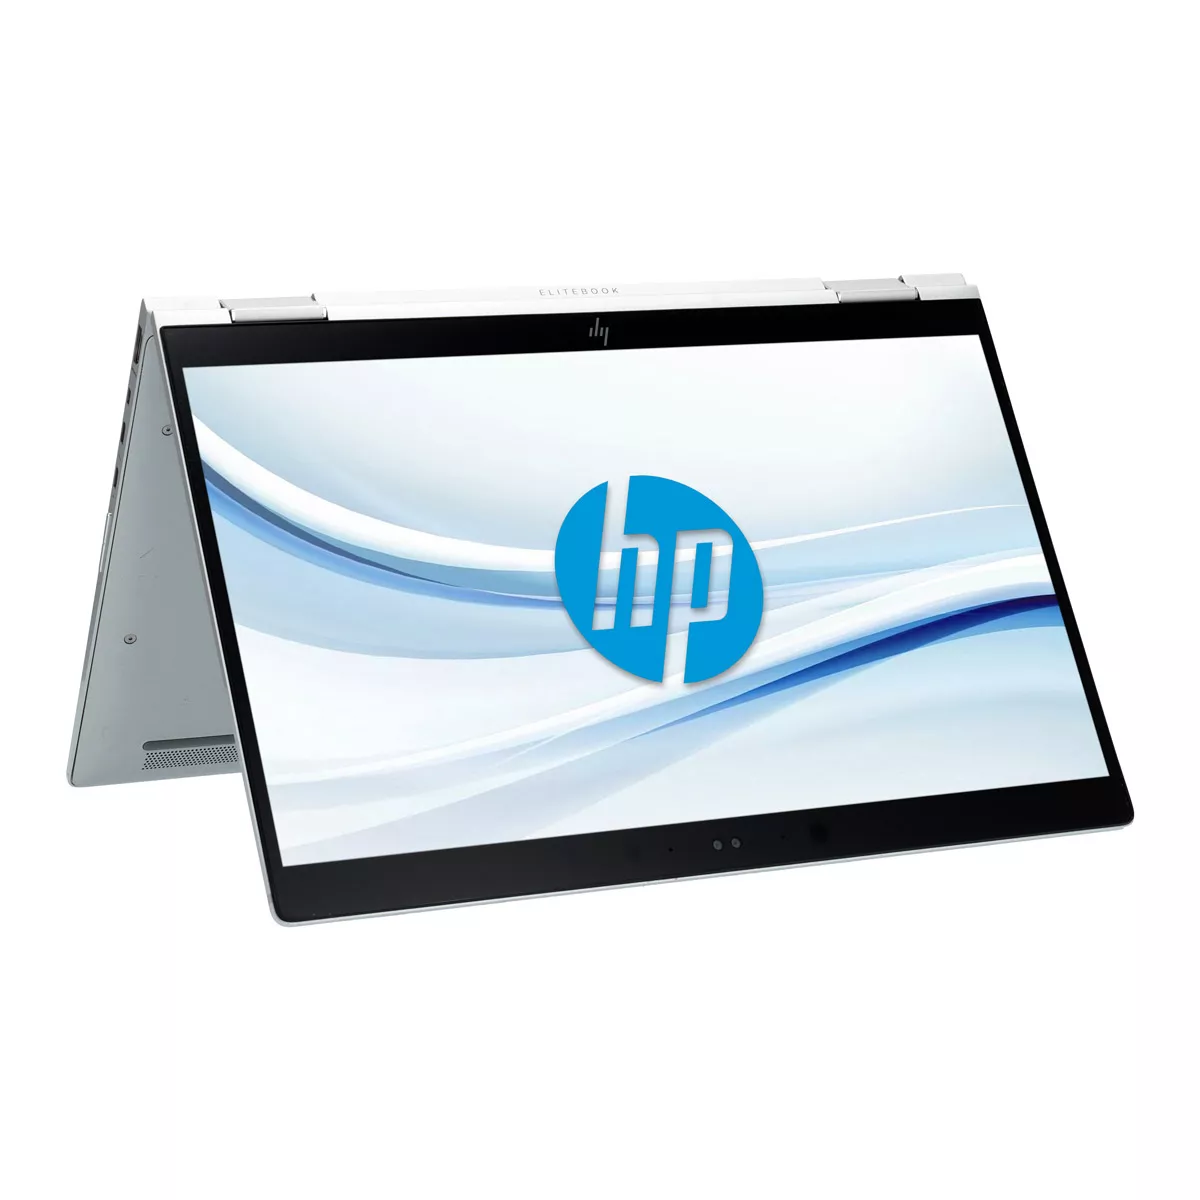 HP EliteBook x360 1030 G3 Core i7 8650U 16 GB 500 GB M.2 nVME SSD Touch Webcam A